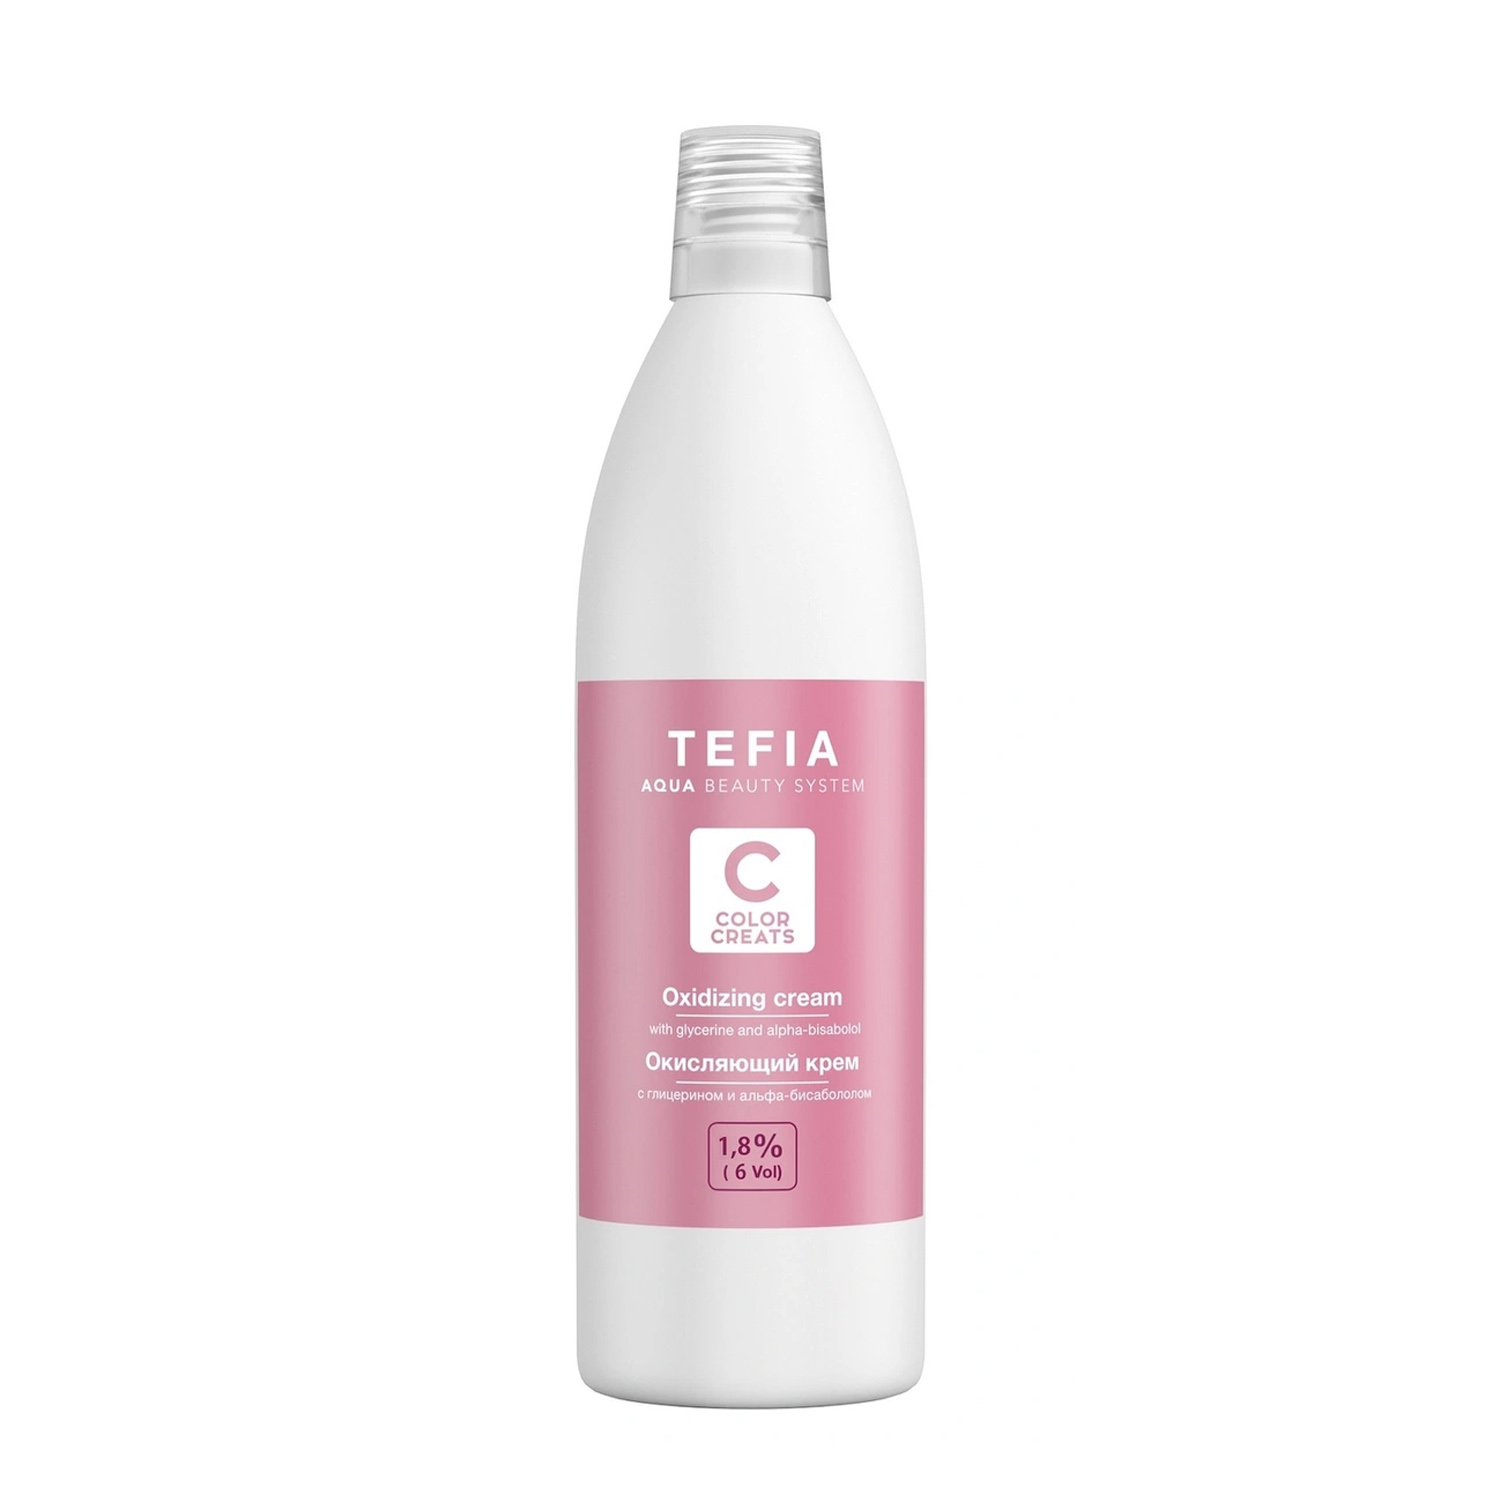 Tefia Окисляющий крем с глицерином и альфа-бисабололом 1,8% 